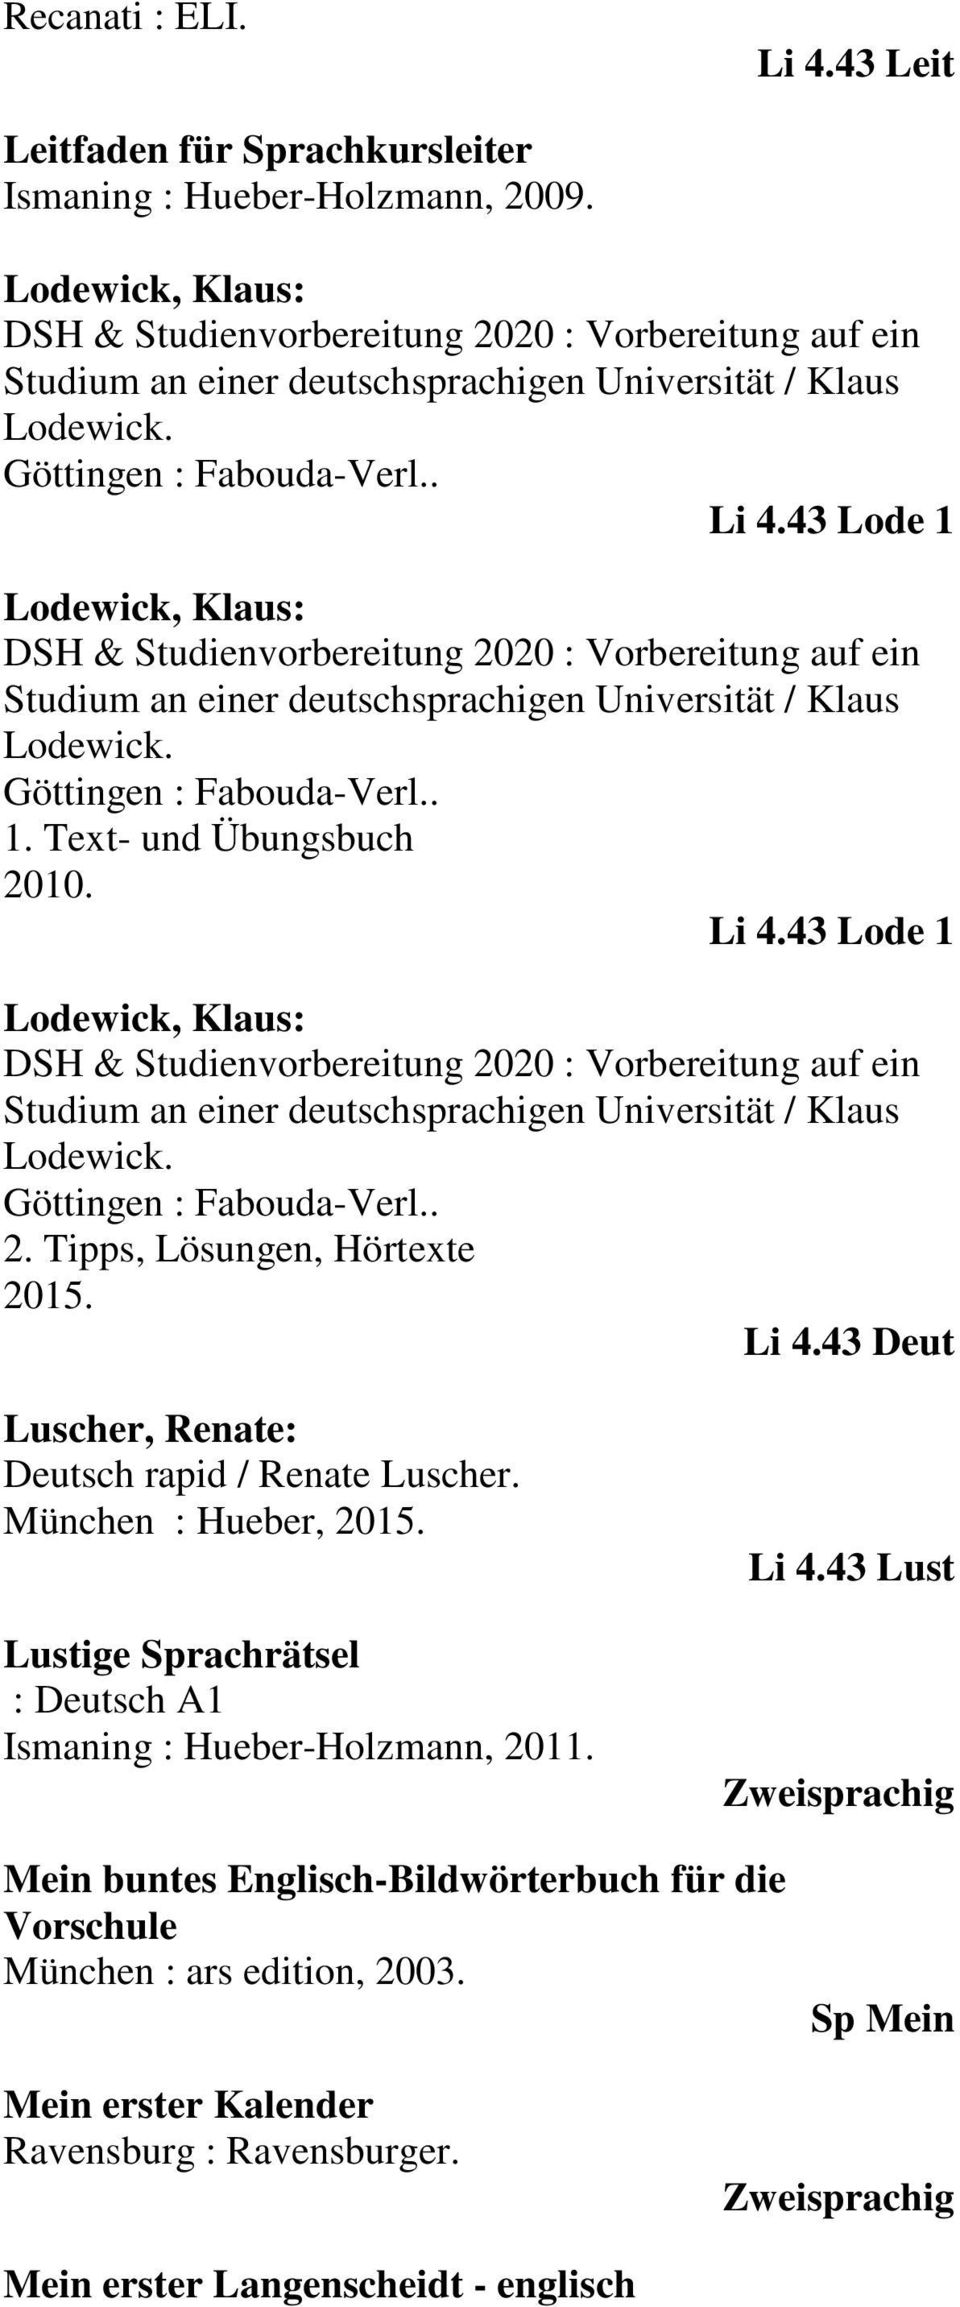 43 Lode 1 Lodewick, Klaus: DSH & Studienvorbereitung 2020 : Vorbereitung auf ein Studium an einer deutschsprachigen Universität / Klaus Lodewick. Göttingen : Fabouda-Verl.. 1. Text- und Übungsbuch 2010.